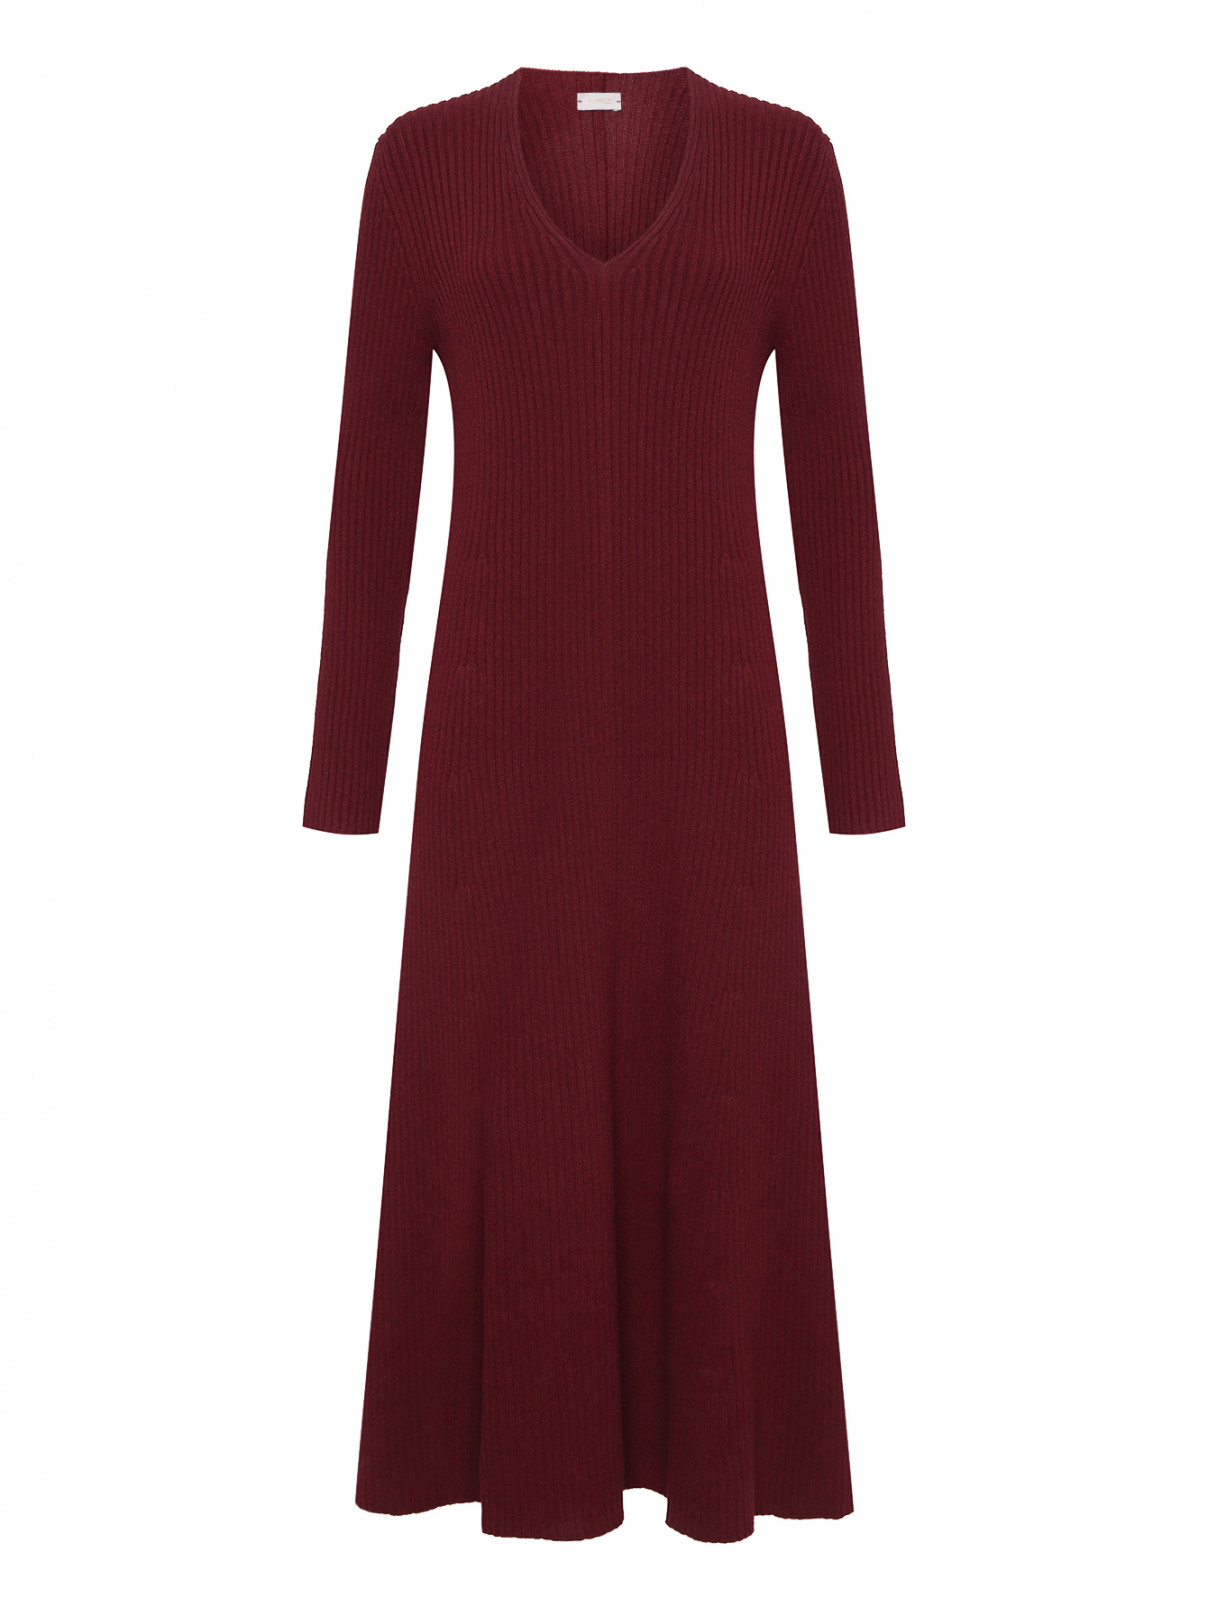 Платье в рубчик из шерсти и кашемира MRZ  –  Общий вид  – Цвет:  Красный